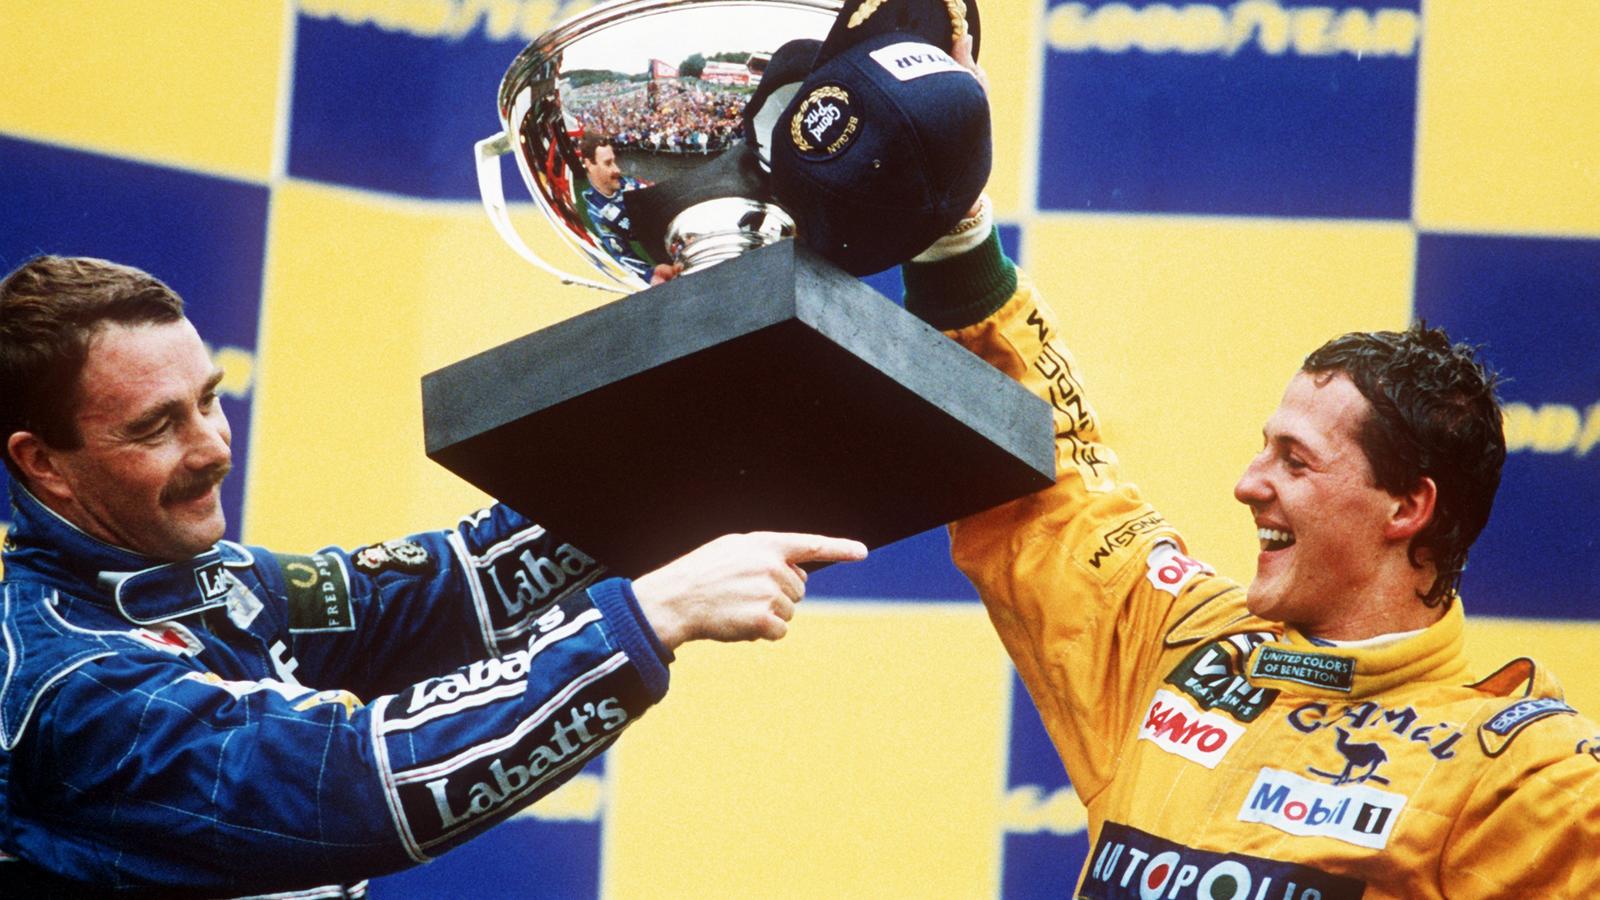 Der deutsche Formel-1-Rennfahrer Michael Schumacher (r) und der Brite Nigel Mansell, der Zweiter wurde, mit dem Siegerpokal am 30.08.1992 in Spa (Belgien). Mit seinem ersten Grand Prix-Sieg krönte Michael Schumacher aus Kerpen am 30.8.1992 beim Große